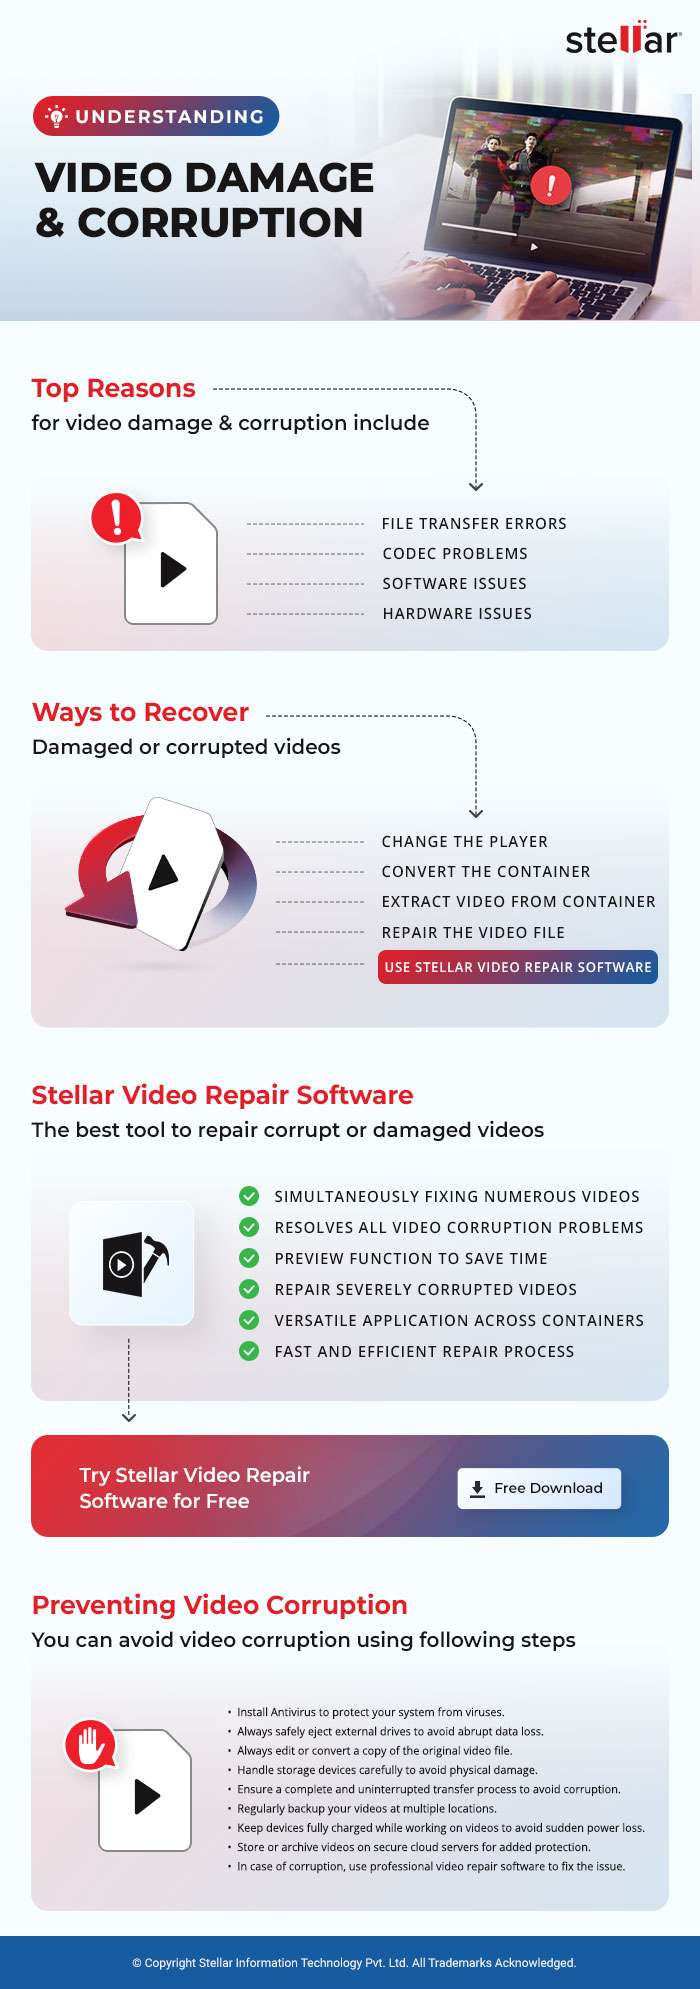 Free-Download-Video-Repair-Tool-to-Repair-Damaged-Videos